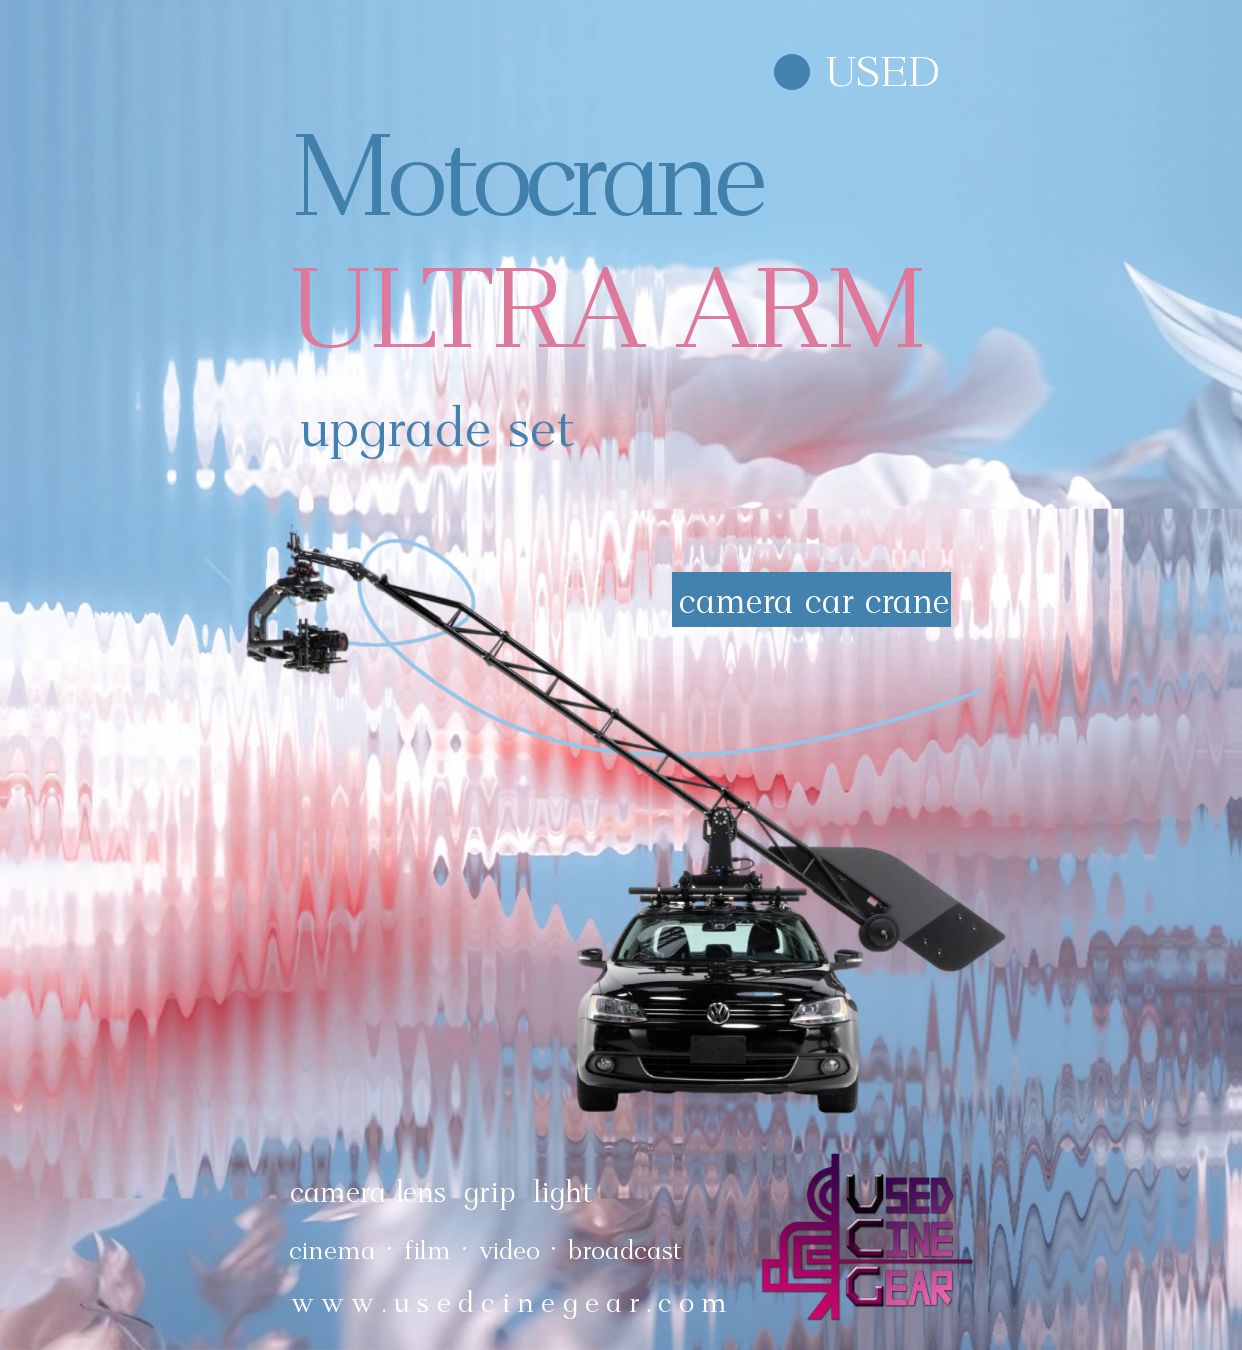 MotoCrane